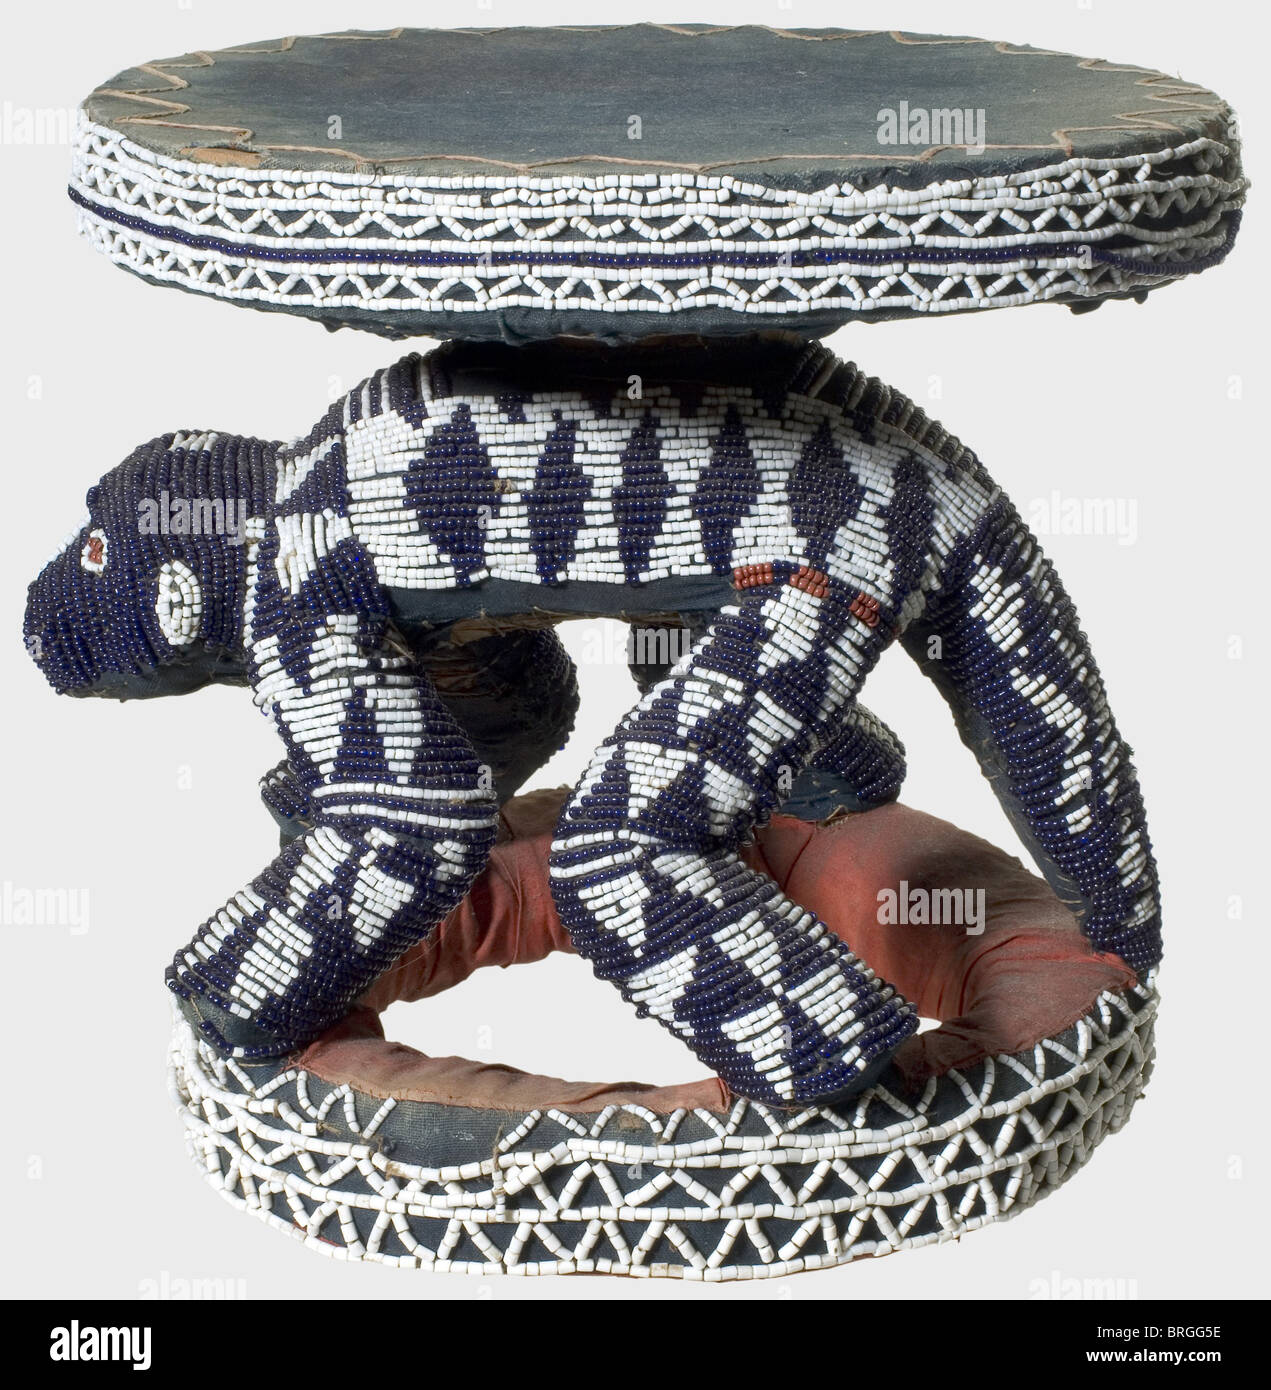 Uno sgabello cerimoniale di Bambileke, Camerun, praterie, prima del 1920 un sedile rotondo su figure brucciate leopardo, base circolare. Parzialmente ricoperto di tessuto blu e rosso e ricamato con perline blu e bianche. Panno leggermente sbiancato, segni di usura e di età. Altezza 35 cm. Diametro della seduta 36 cm. I Bambileke considerano il leopardo un simbolo di potere, con stretti legami con la persona del loro re. Cf Nord, Arte del Camerun, Ill. 155. Provenienza: Da una collezione tedesca, assemblata prima del 1920. Vedi anche: Asta di Sotheby's New York,Arte dell'Africa,Oc,diritti aggiuntivi-clearences-non disponibile Foto Stock